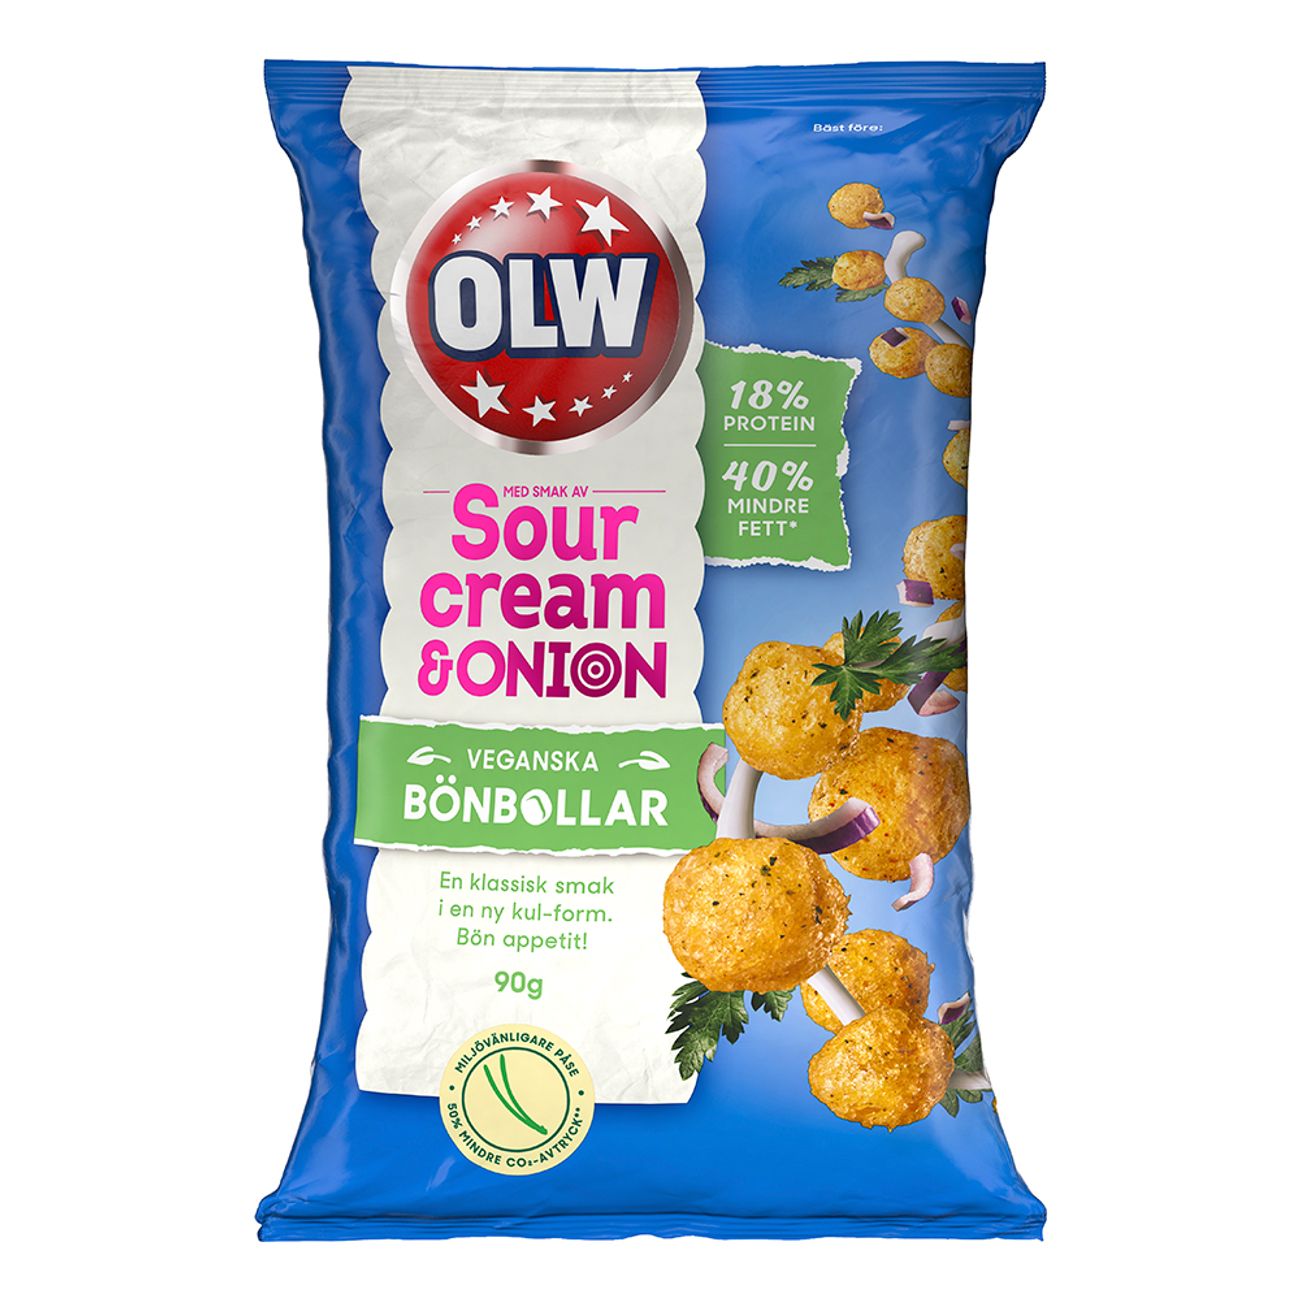 olw-bonbollar-sourcream-onion-67888-2